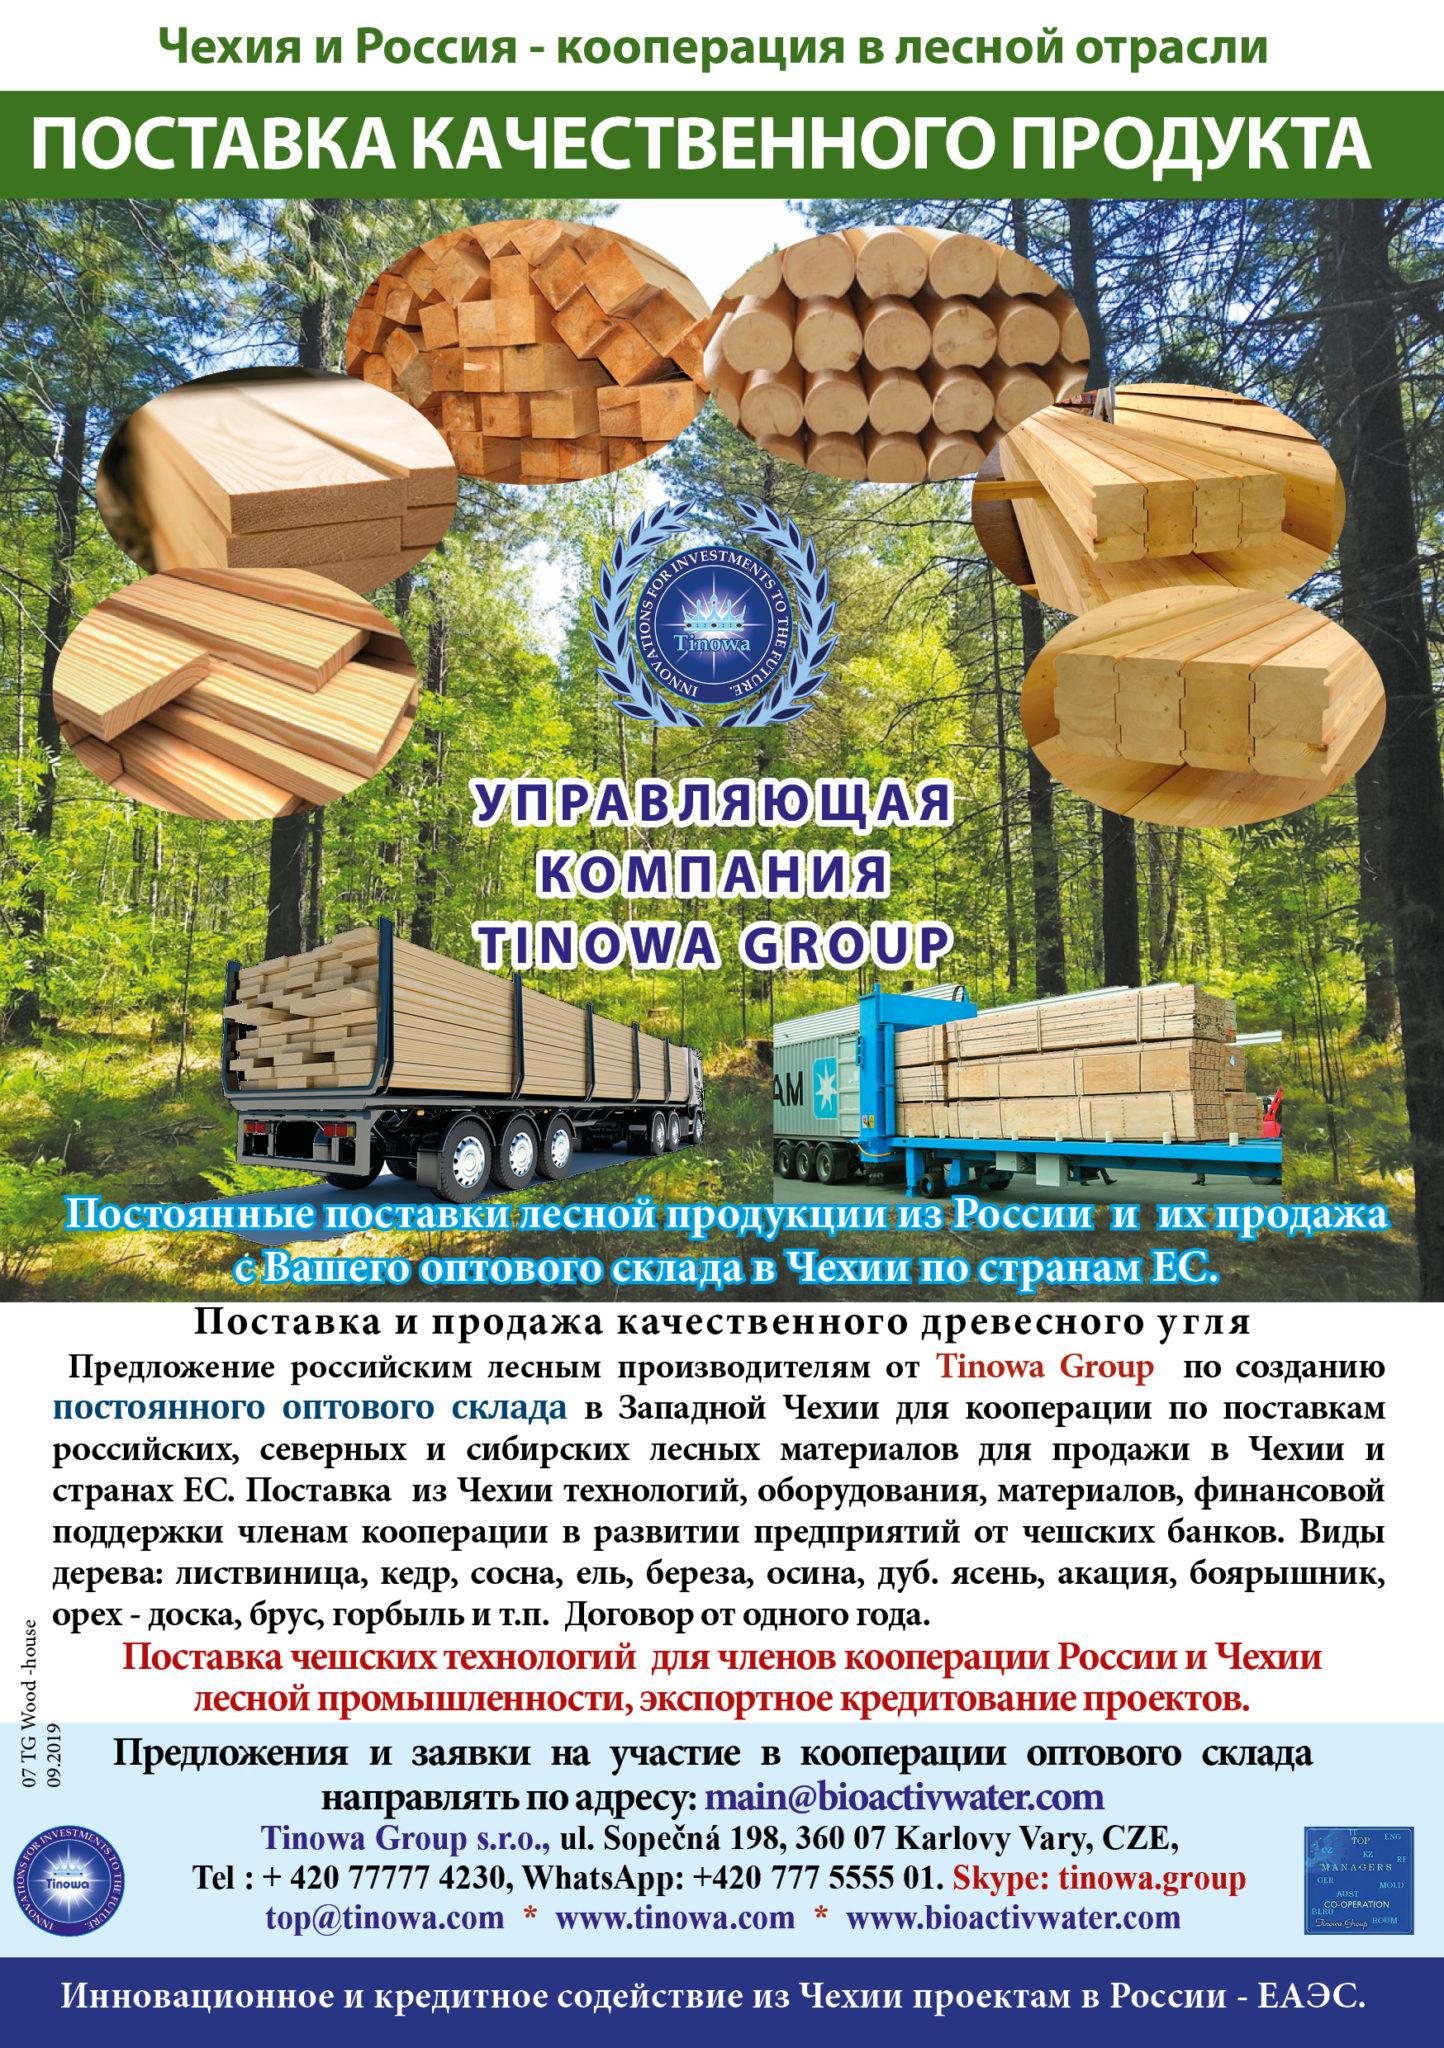 Склад прямых продаж по Европе лесной продукции в Западной Чехии